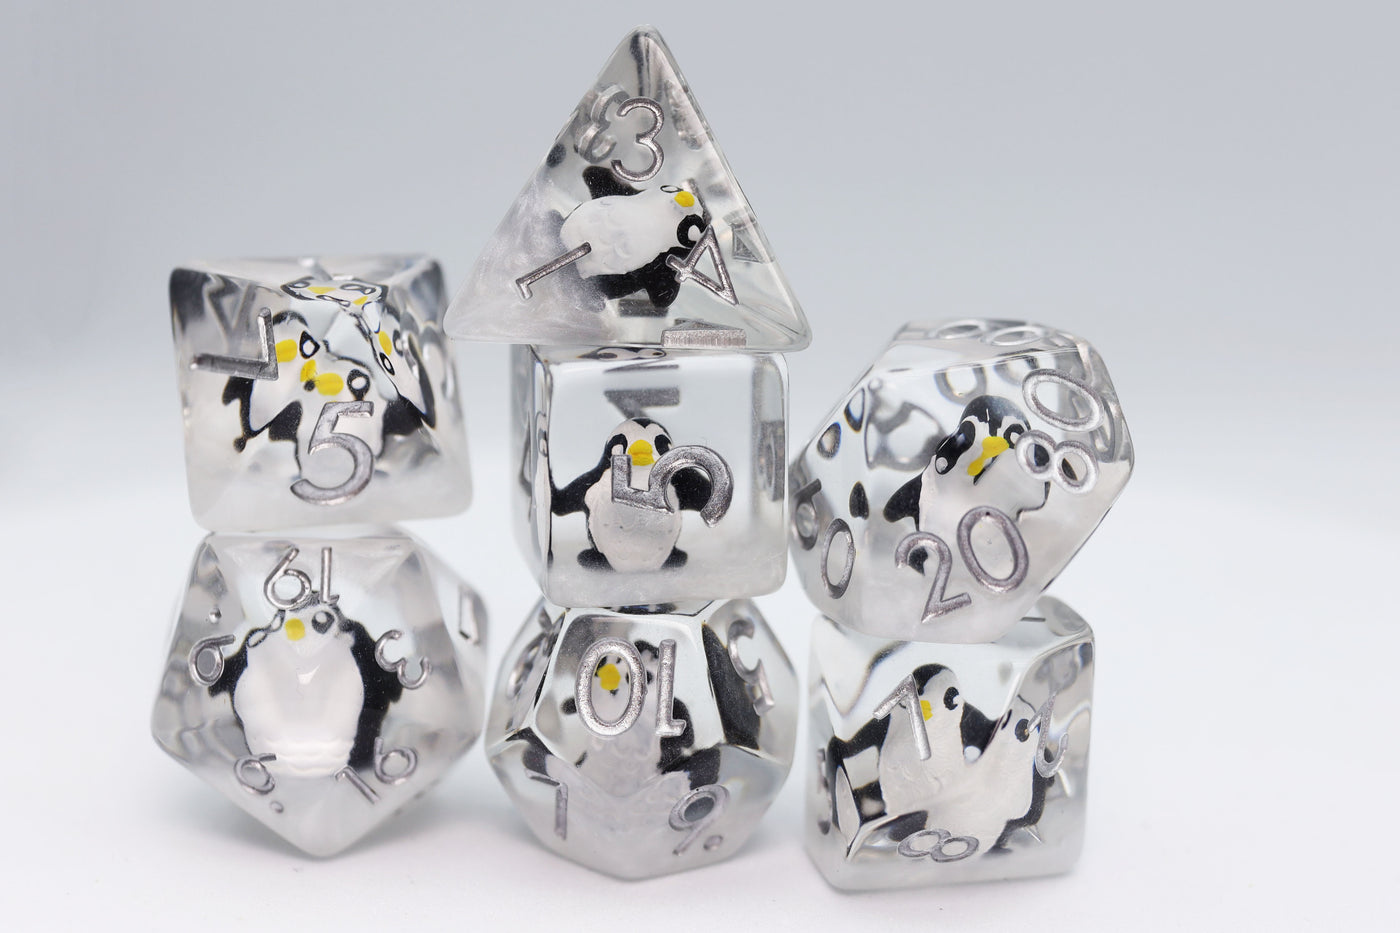 Baby Penguin RPG Dice Set Plastic Dice Foam Brain Games